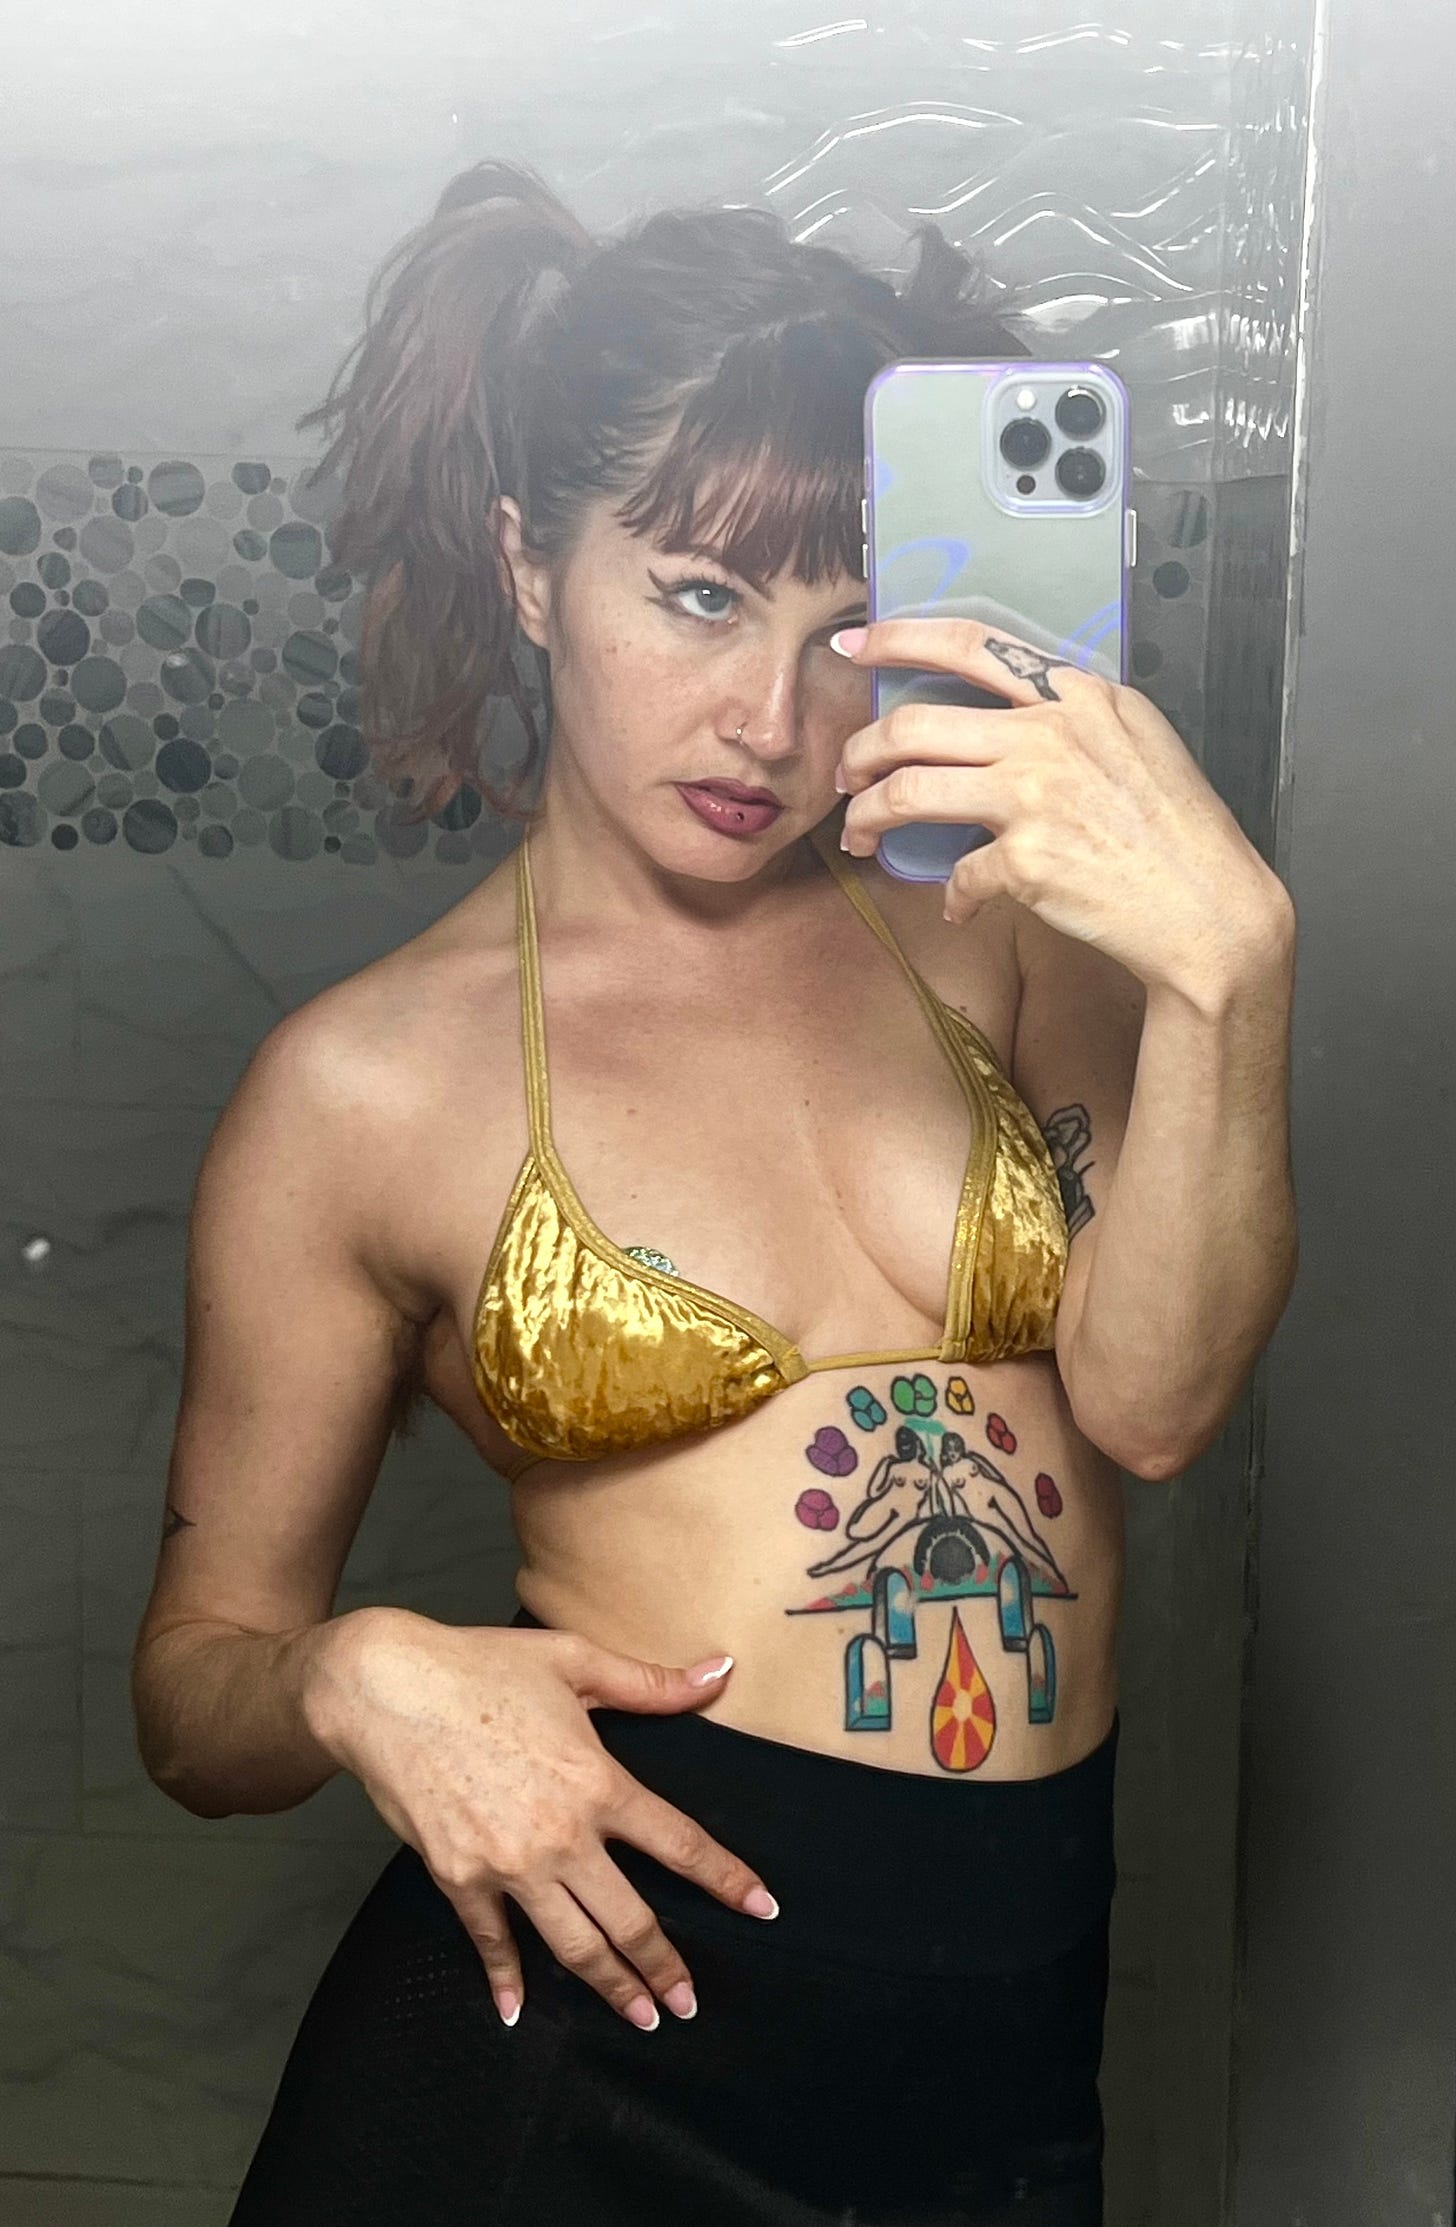 Mirror selfie of Alice on given night in bikini.